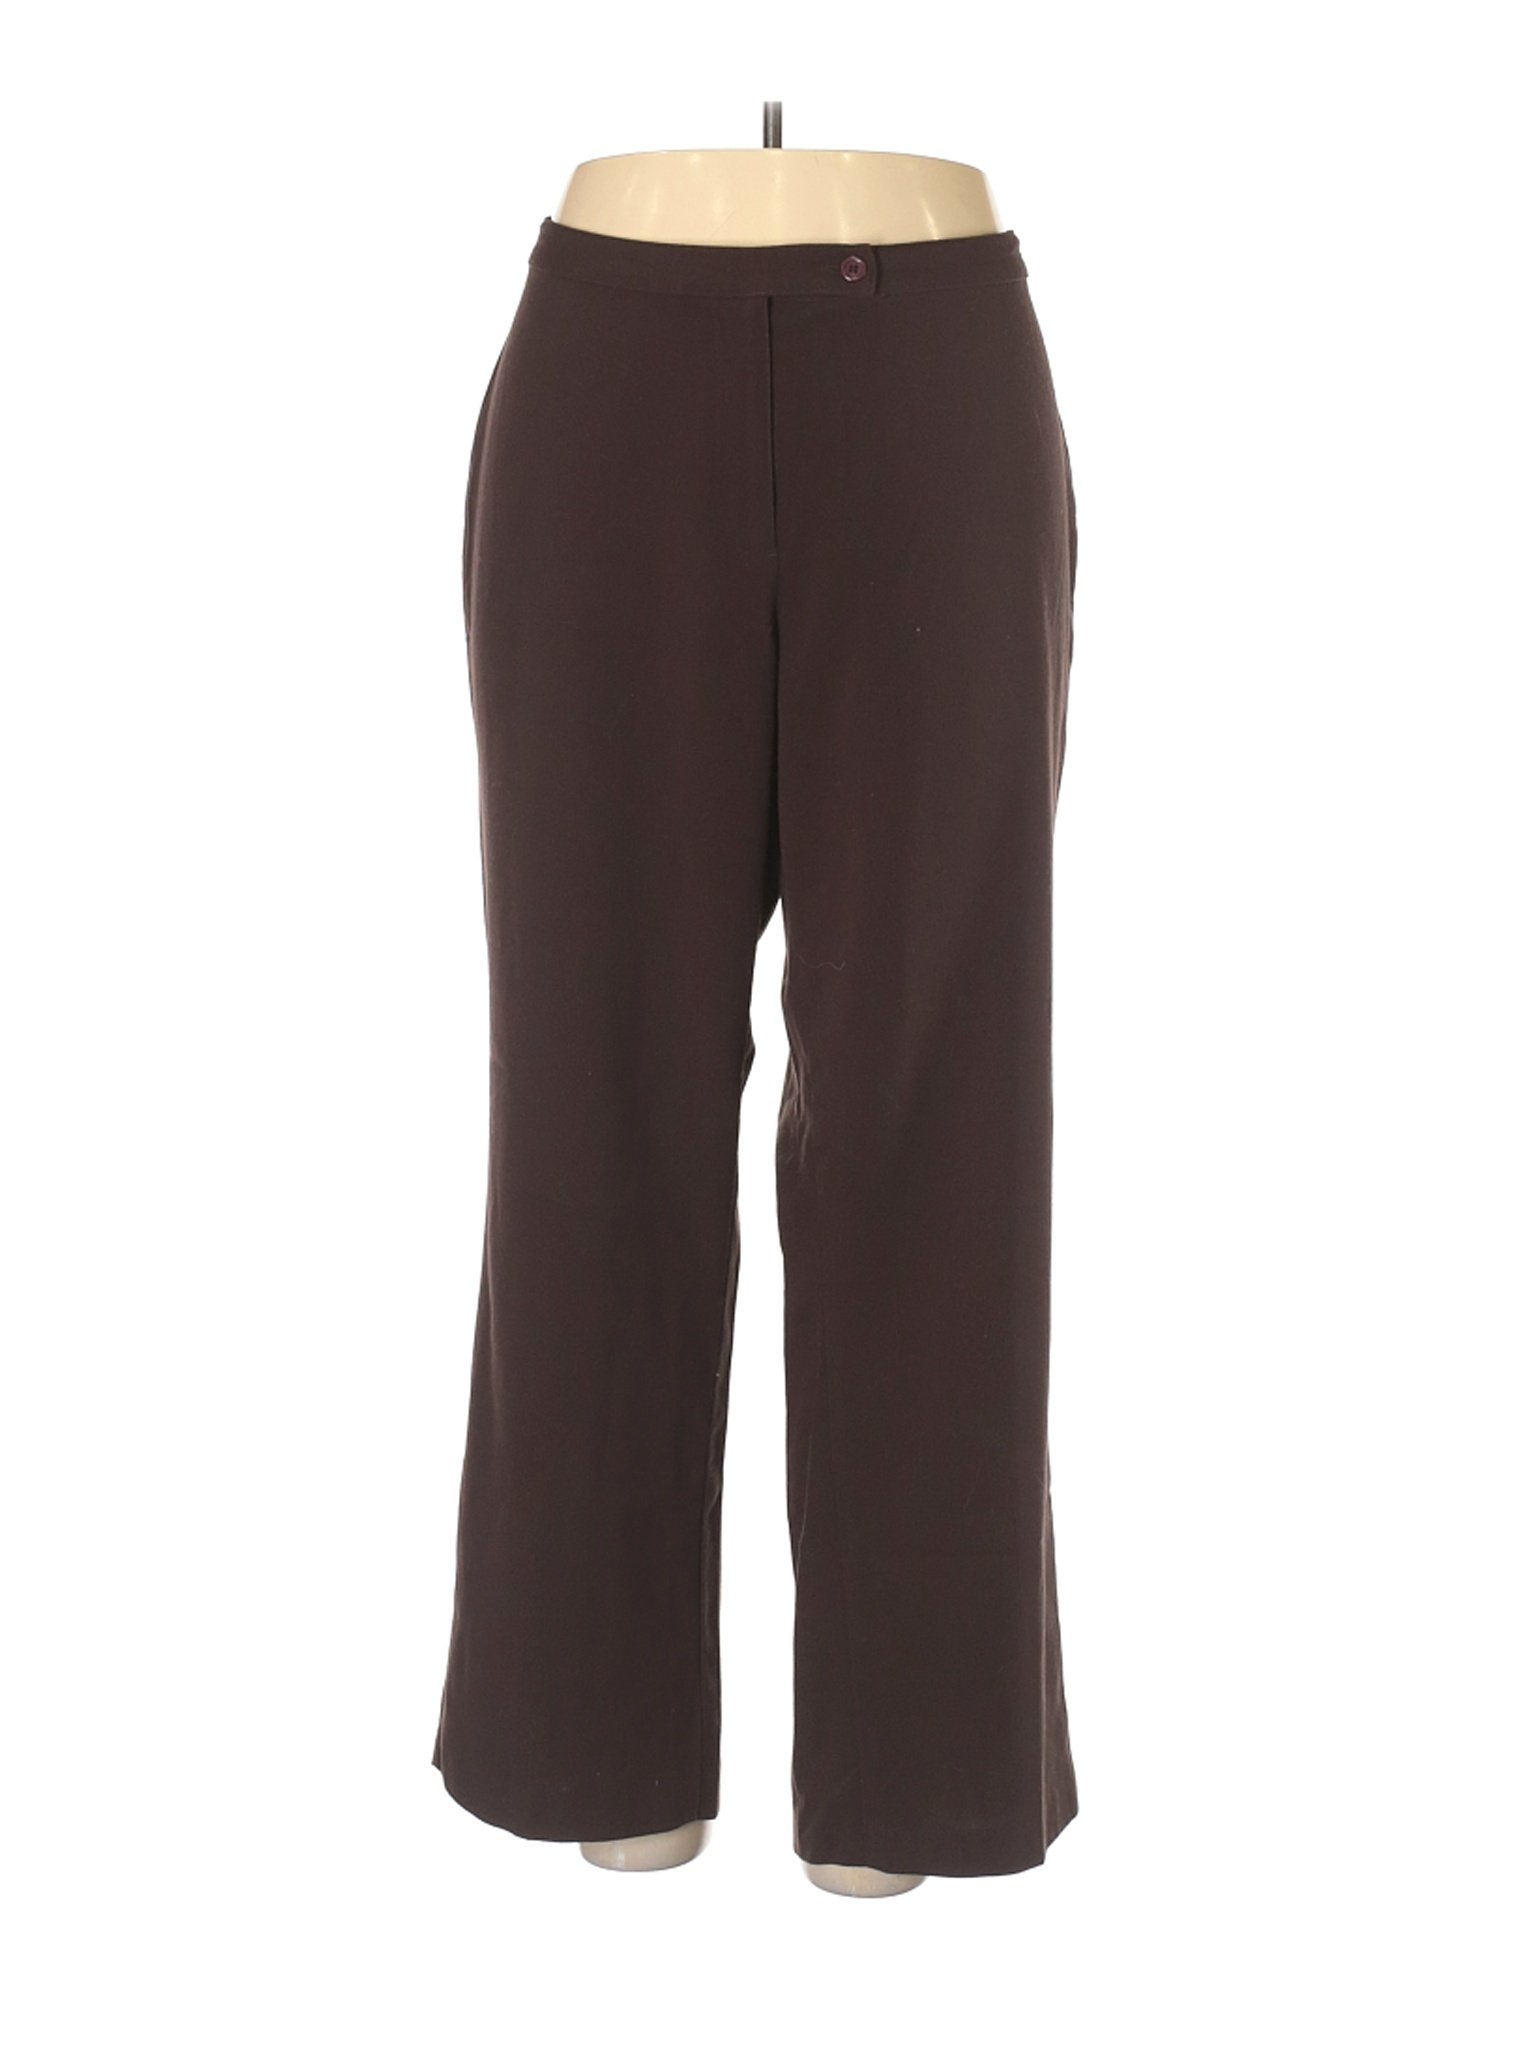 Alia Women Brown Dress Pants 18 Plus | eBay